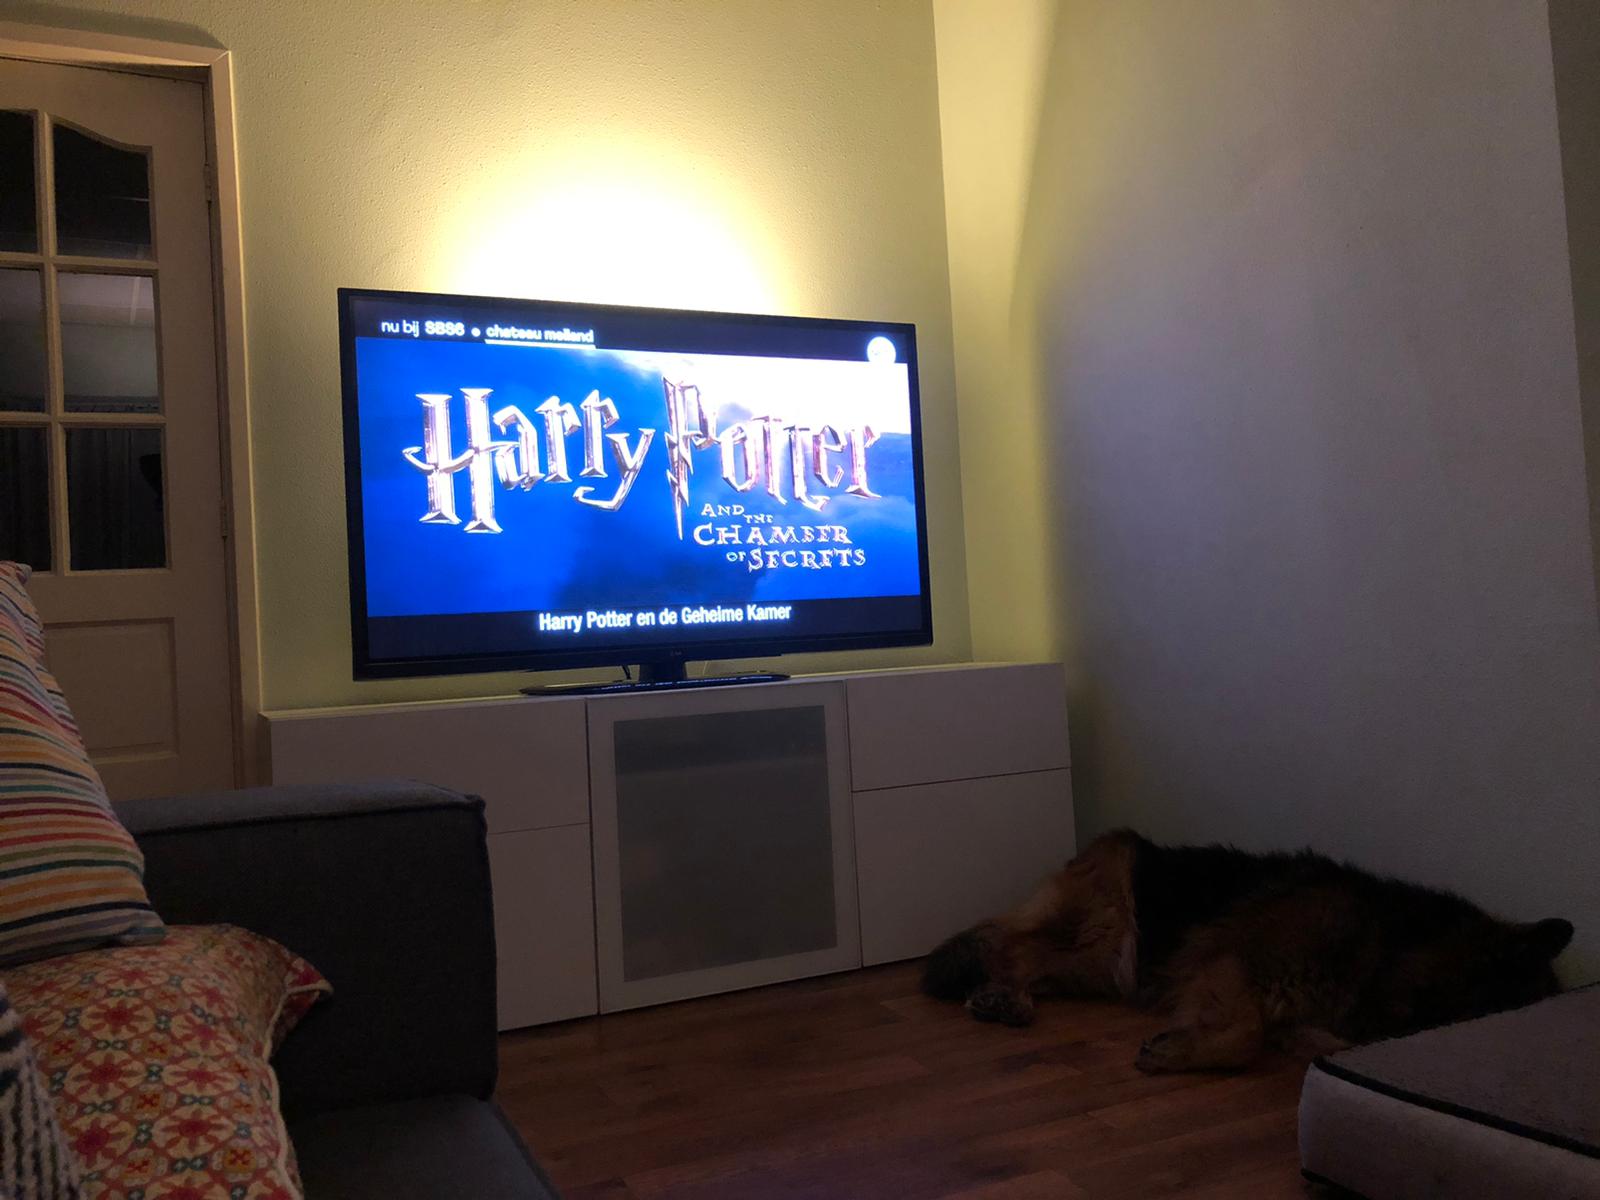 Harry Potter en de geheime kamer